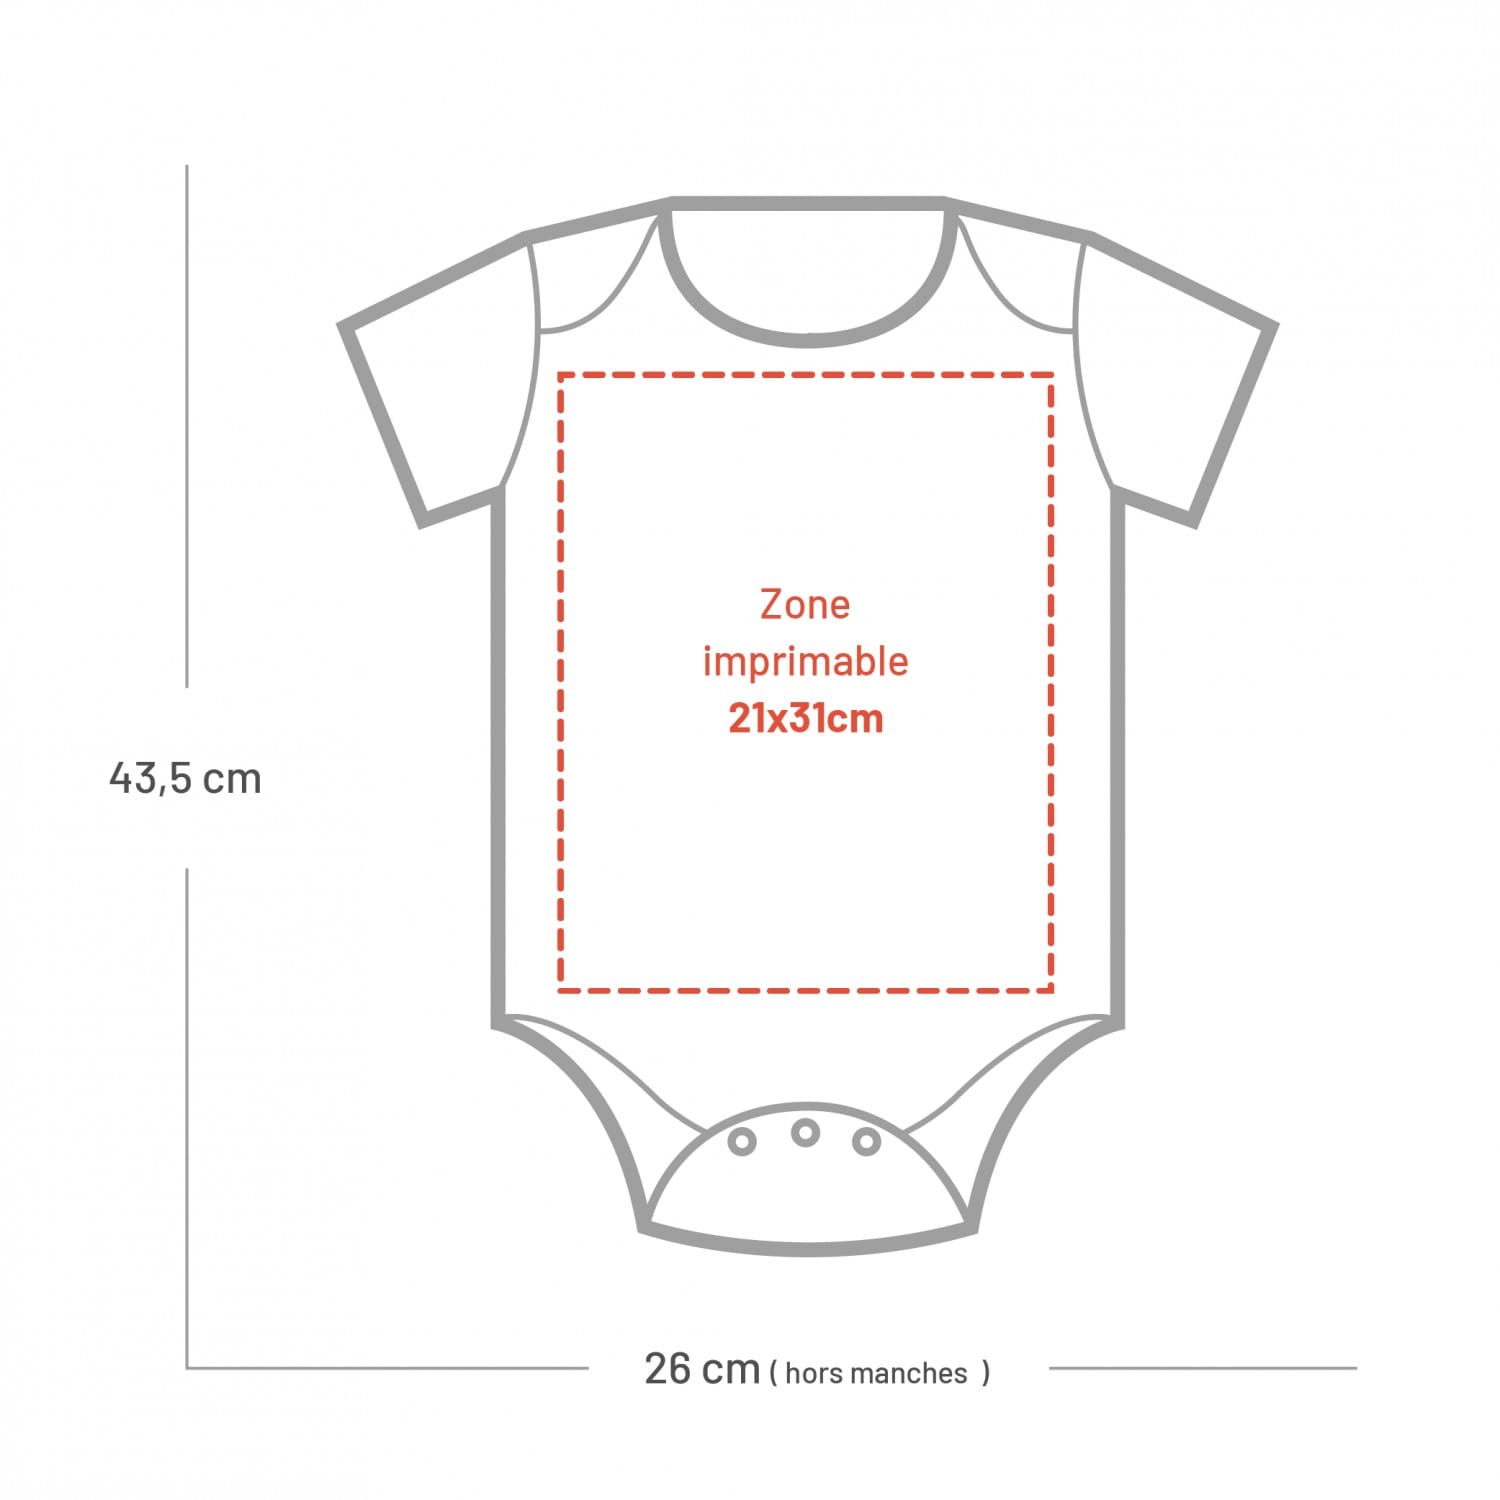 Body enfant en polyester 62/68cm - 3/6 mois pour sublimation